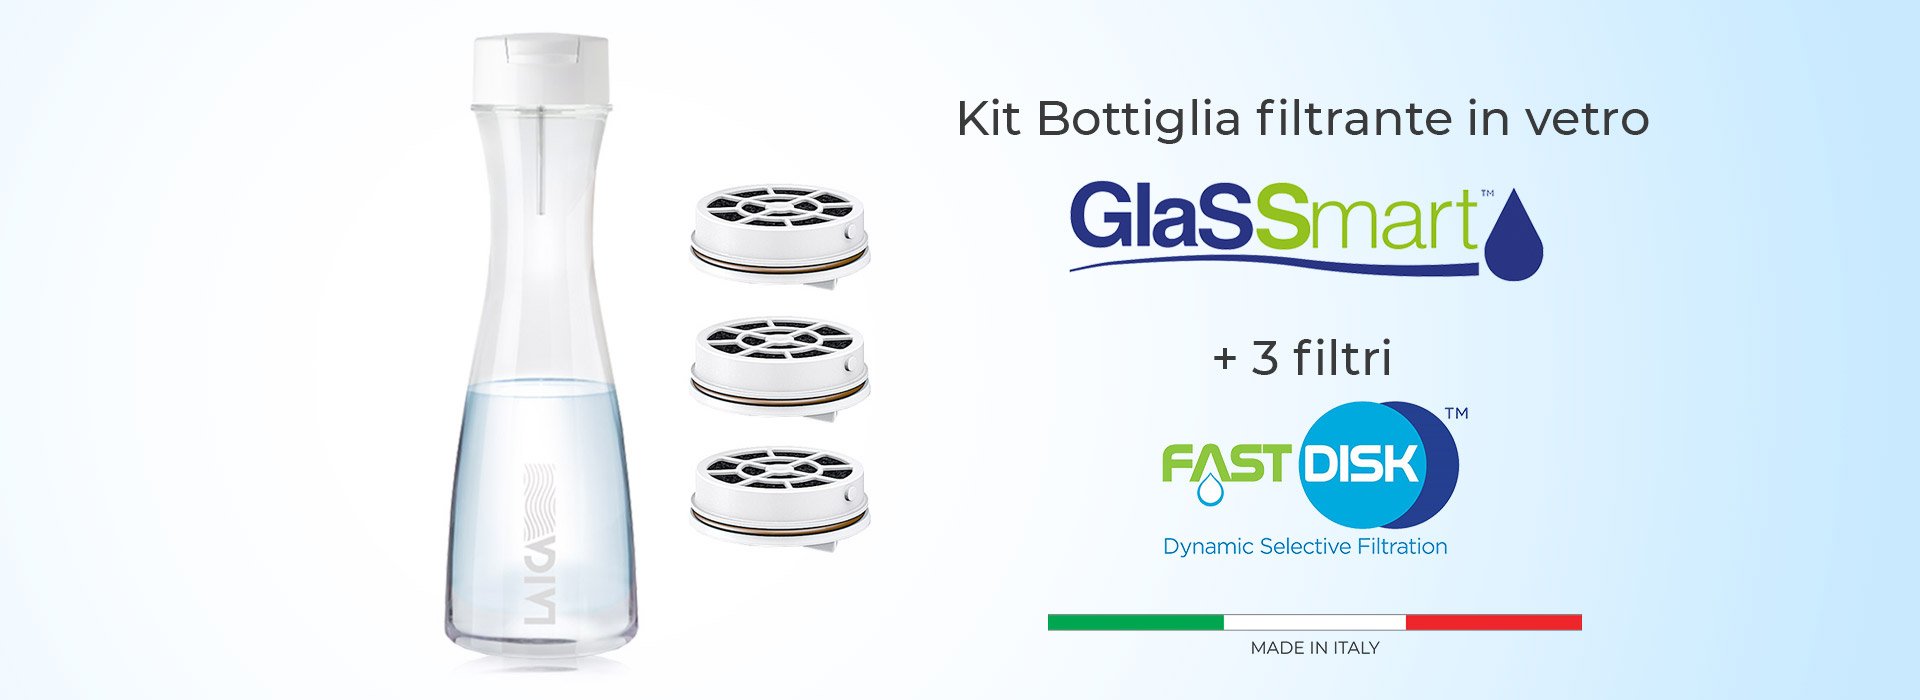 Kit Bottiglia filtrante Glassmart LAICA